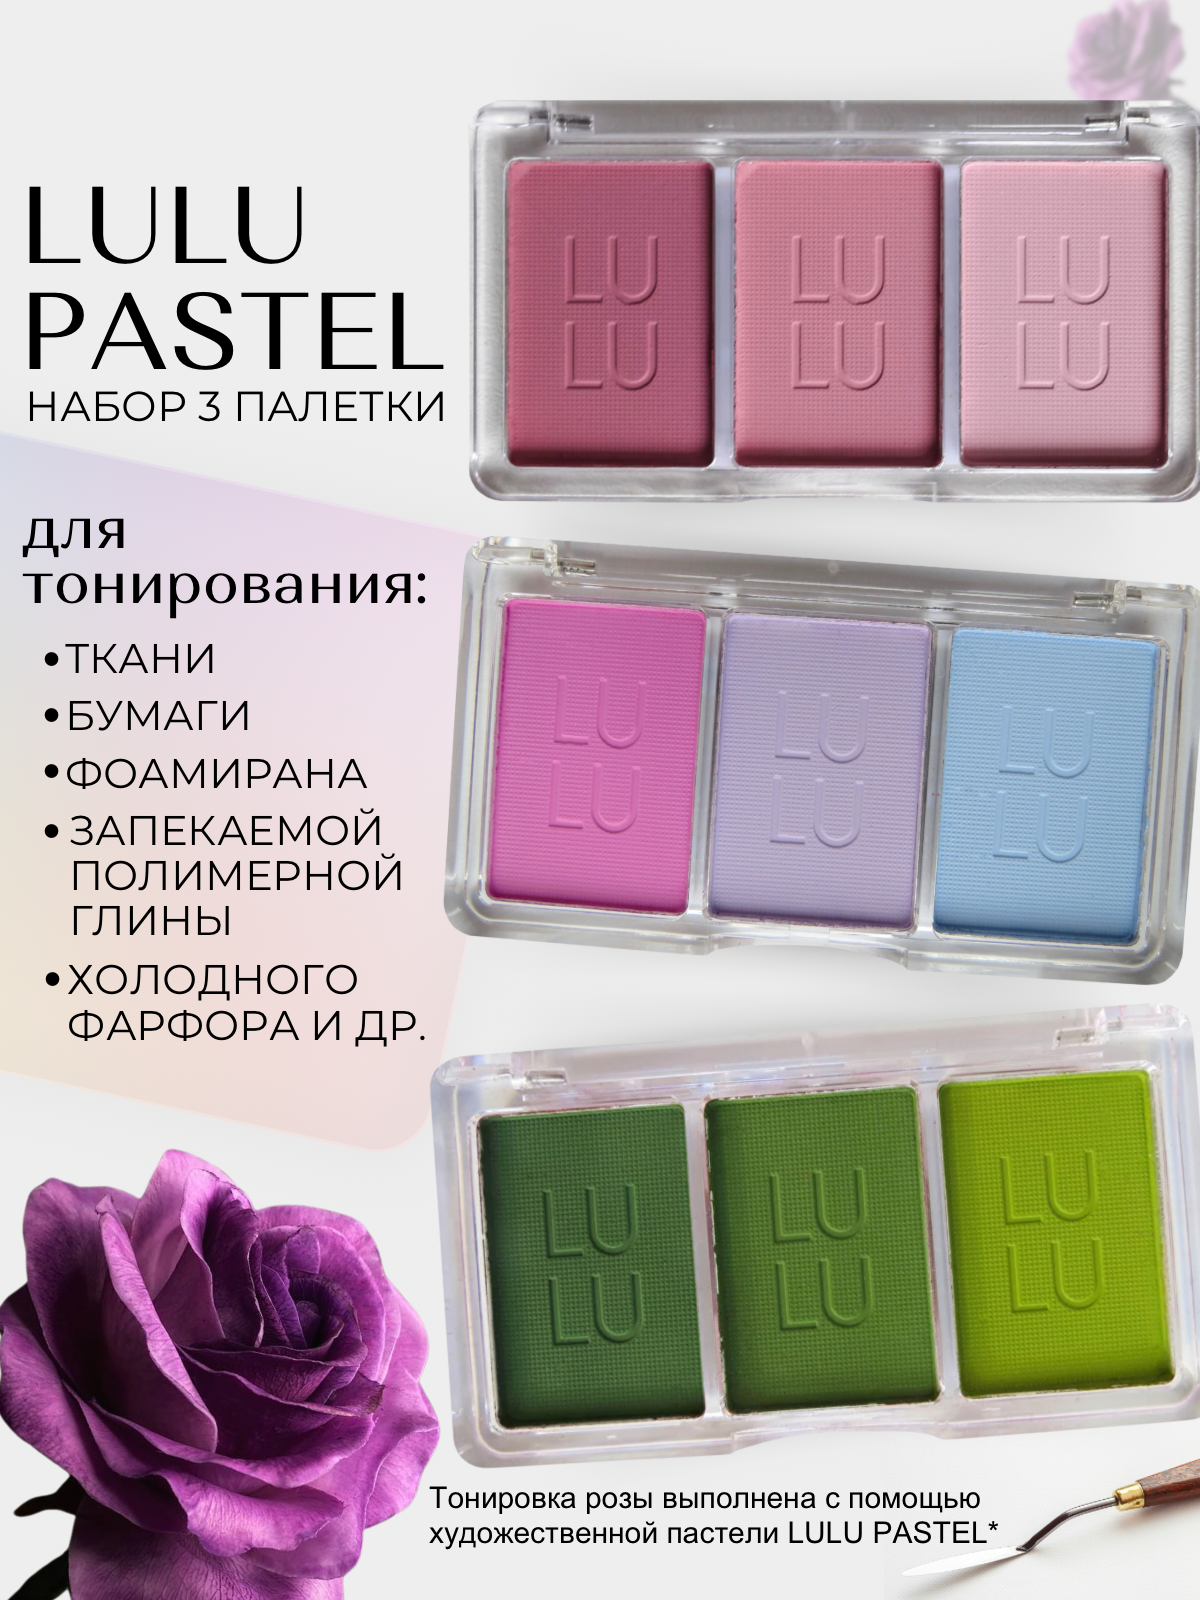 Набор палеток 3 шт LULU pastel - Художественная пастель для тонирования фоамирана, ткани, бумаги